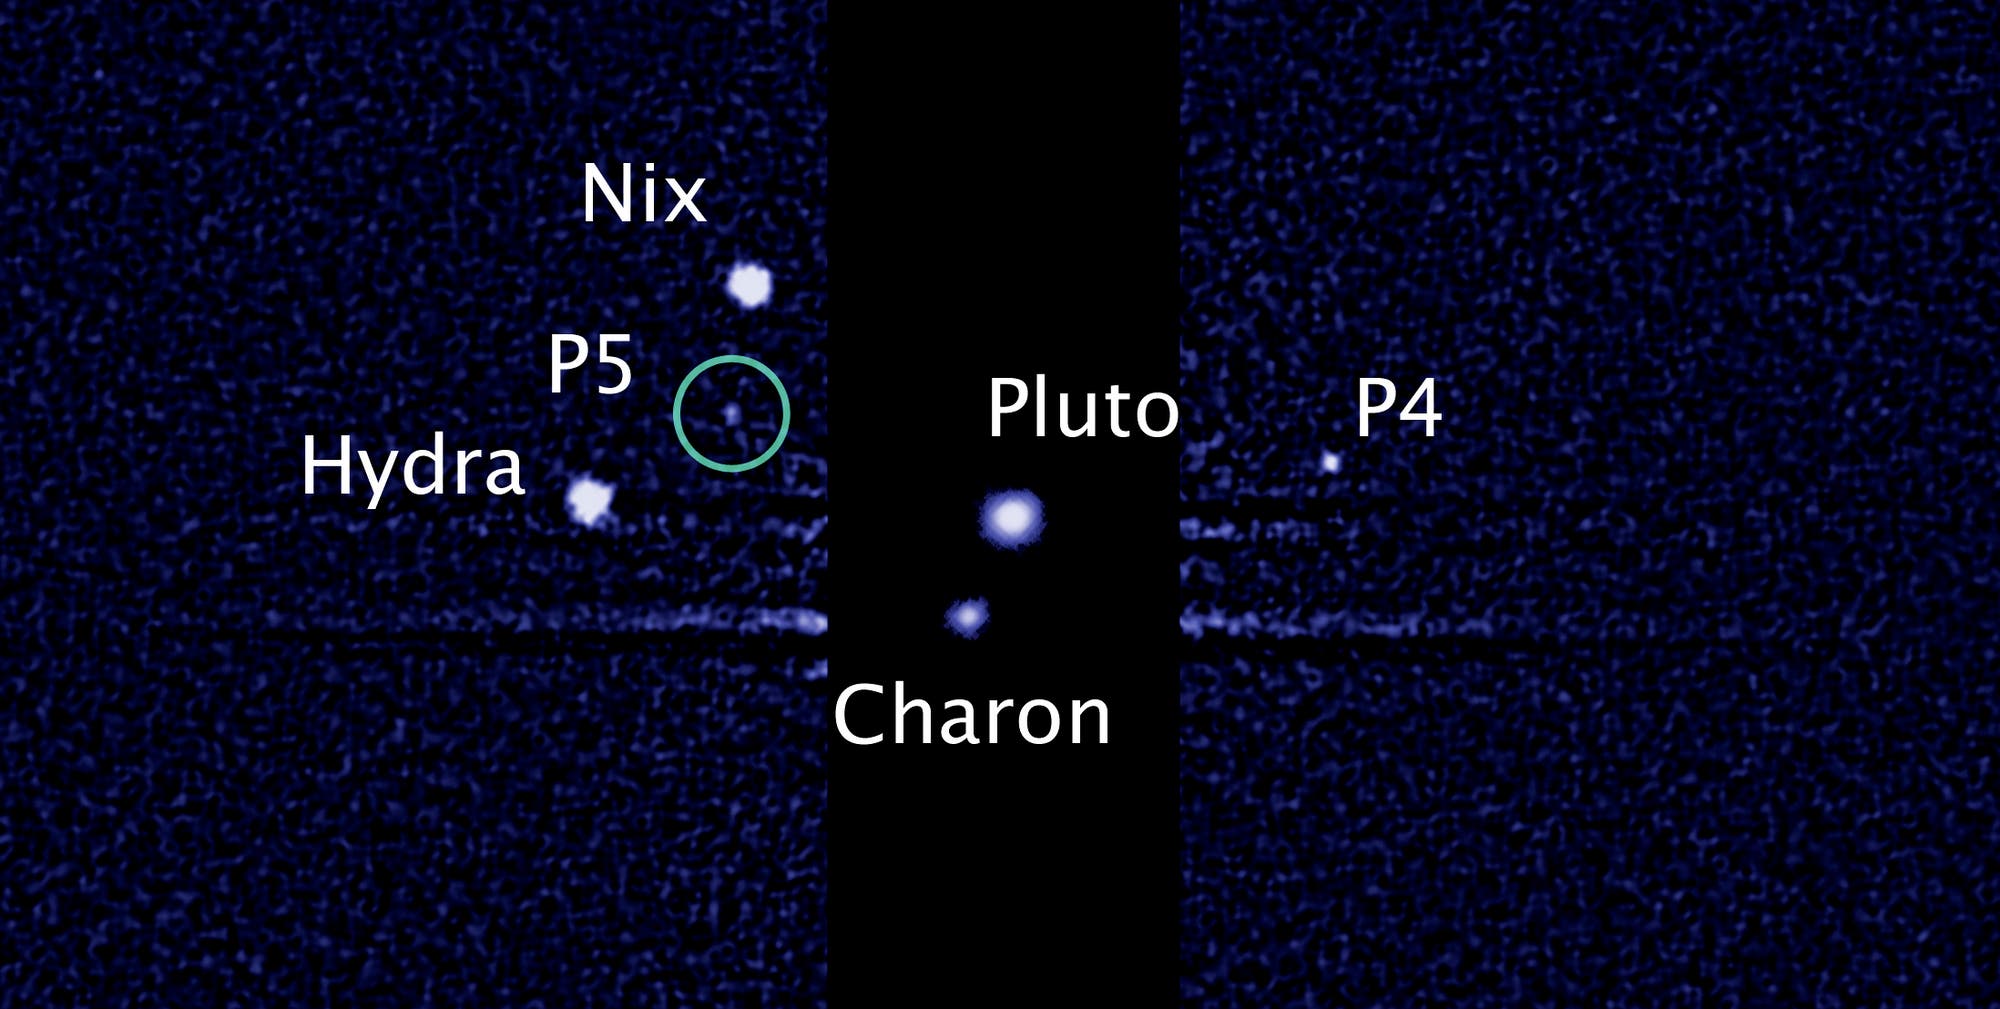 Die fünf Monde des Zwergplaneten Pluto